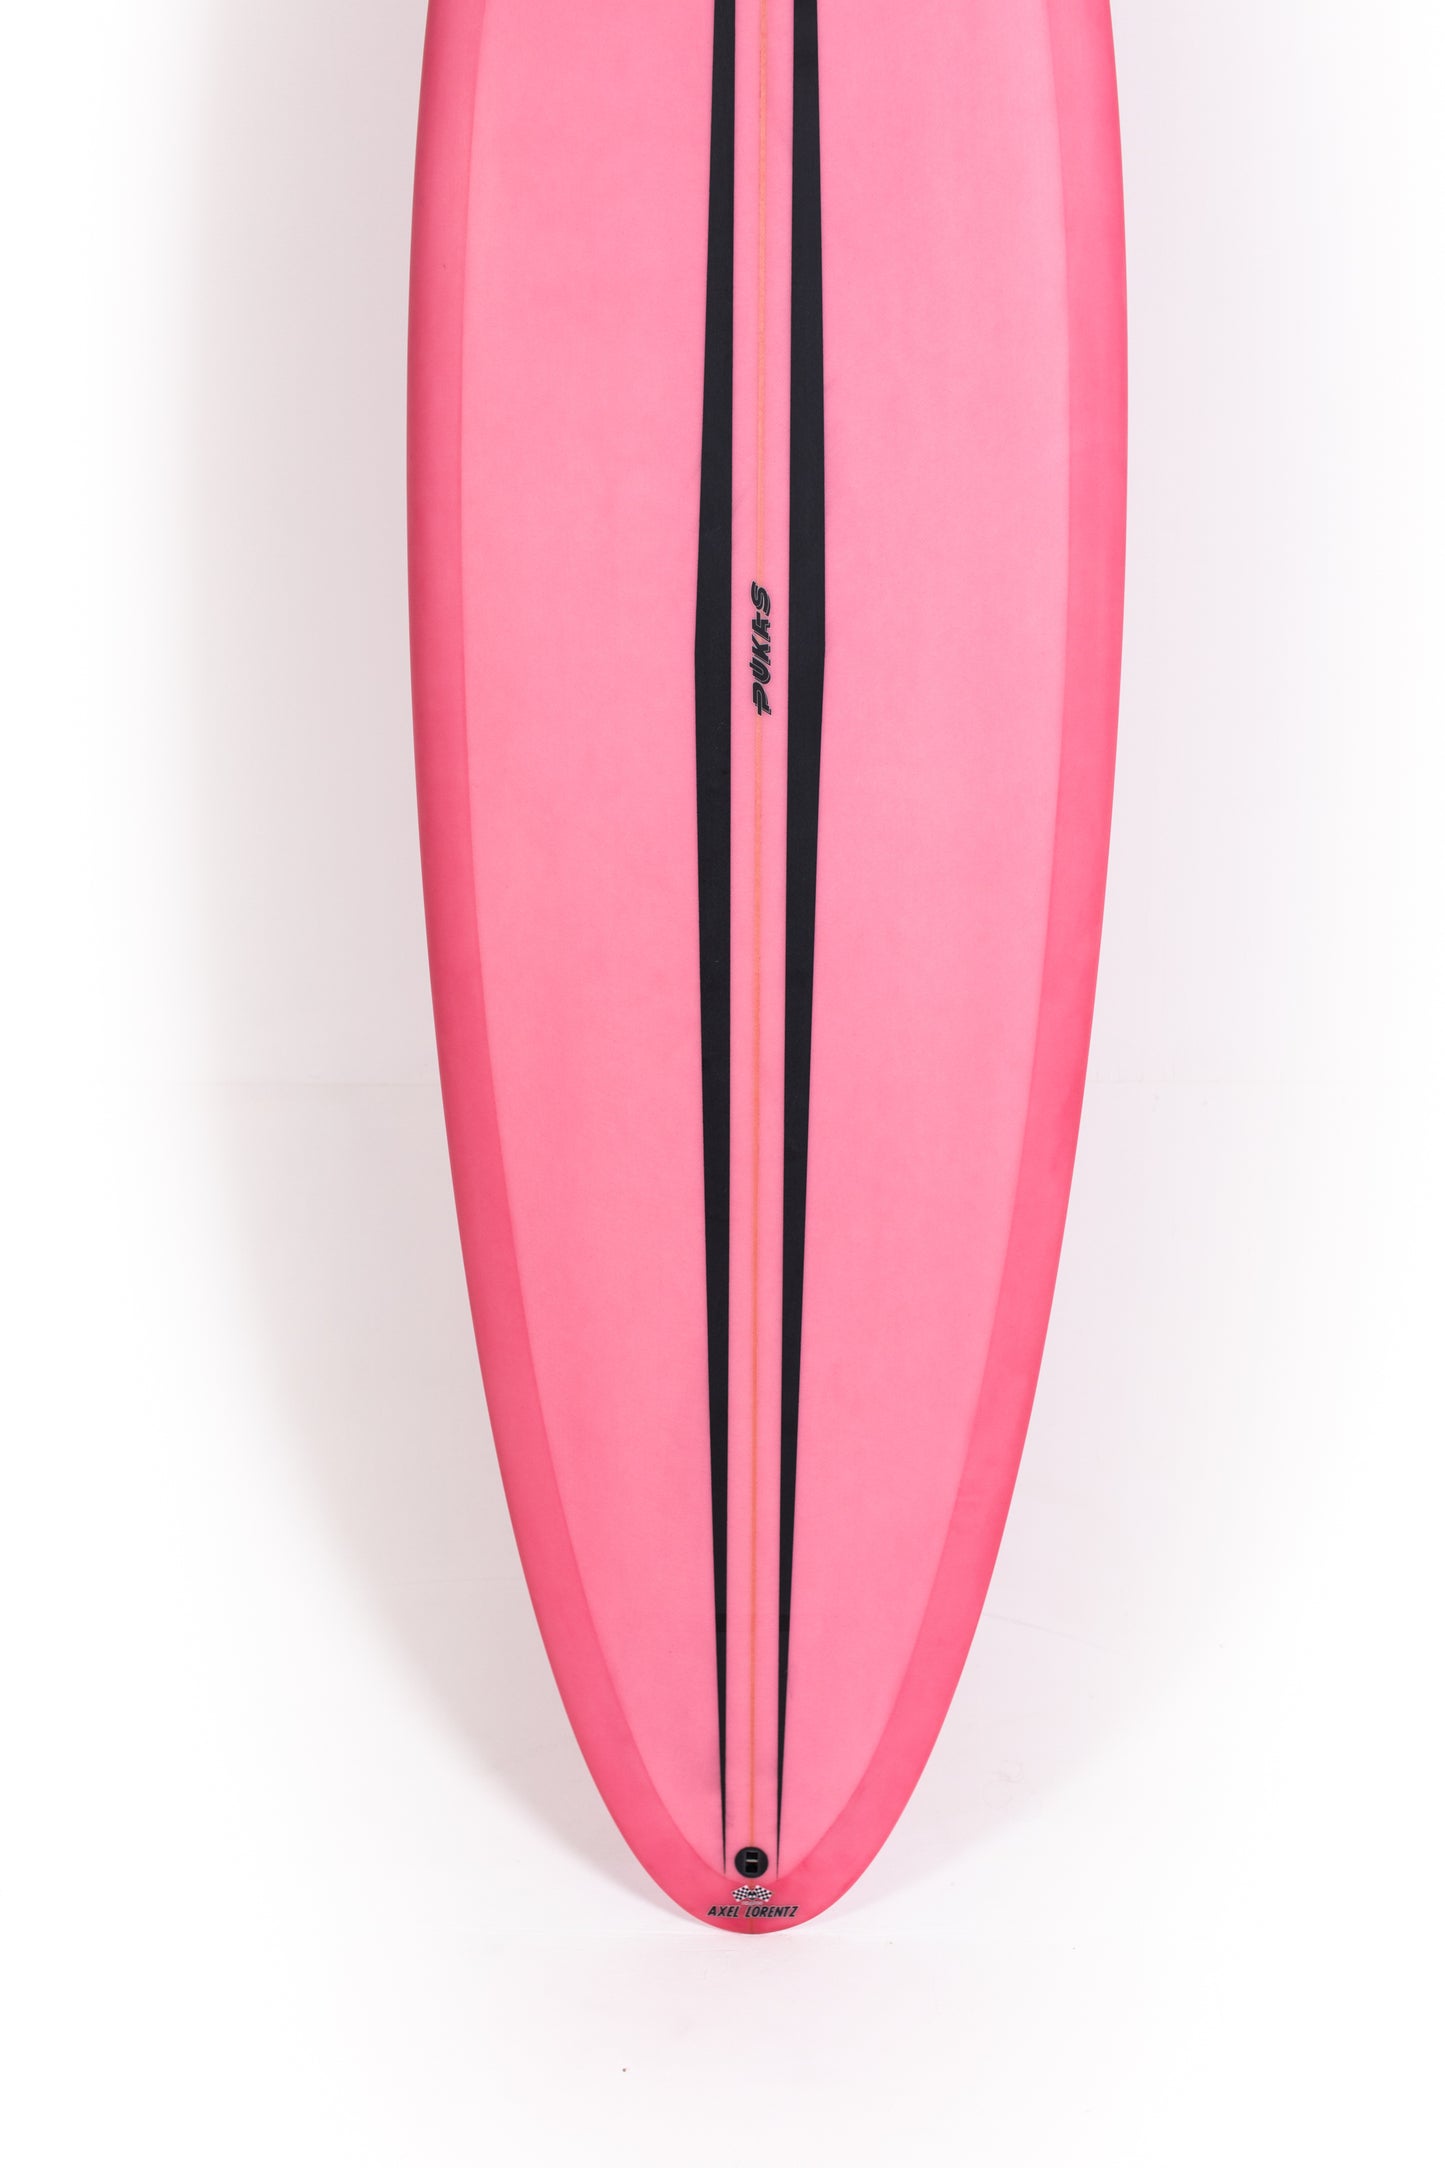 
                  
                    Pukas Surf Shop - Pukas Surfboard - LA CÔTE by Axel Lorentz - 6'6" x 21,13 x 2,81 - 42,04L -  AX09622
                  
                